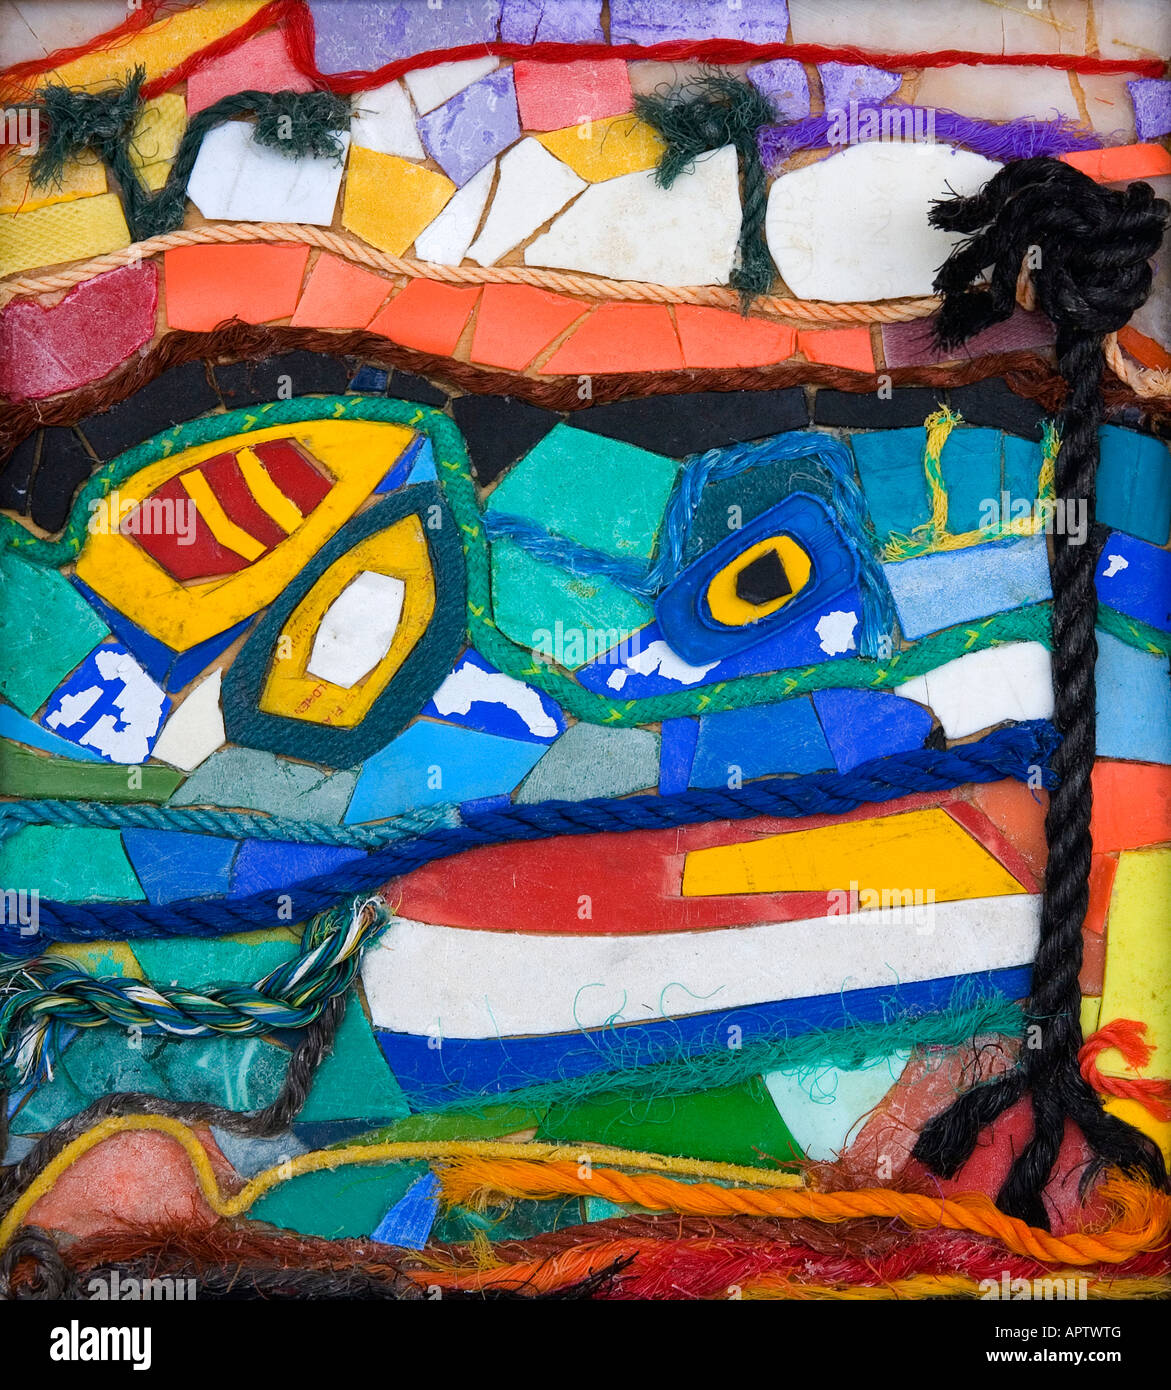 Karibischen Image von Nicola Scott Taylor. Eine Collage aus Stücken von Seil und Kunststoff gesammelt von Ablagerungen an den Strand gespült. Stockfoto